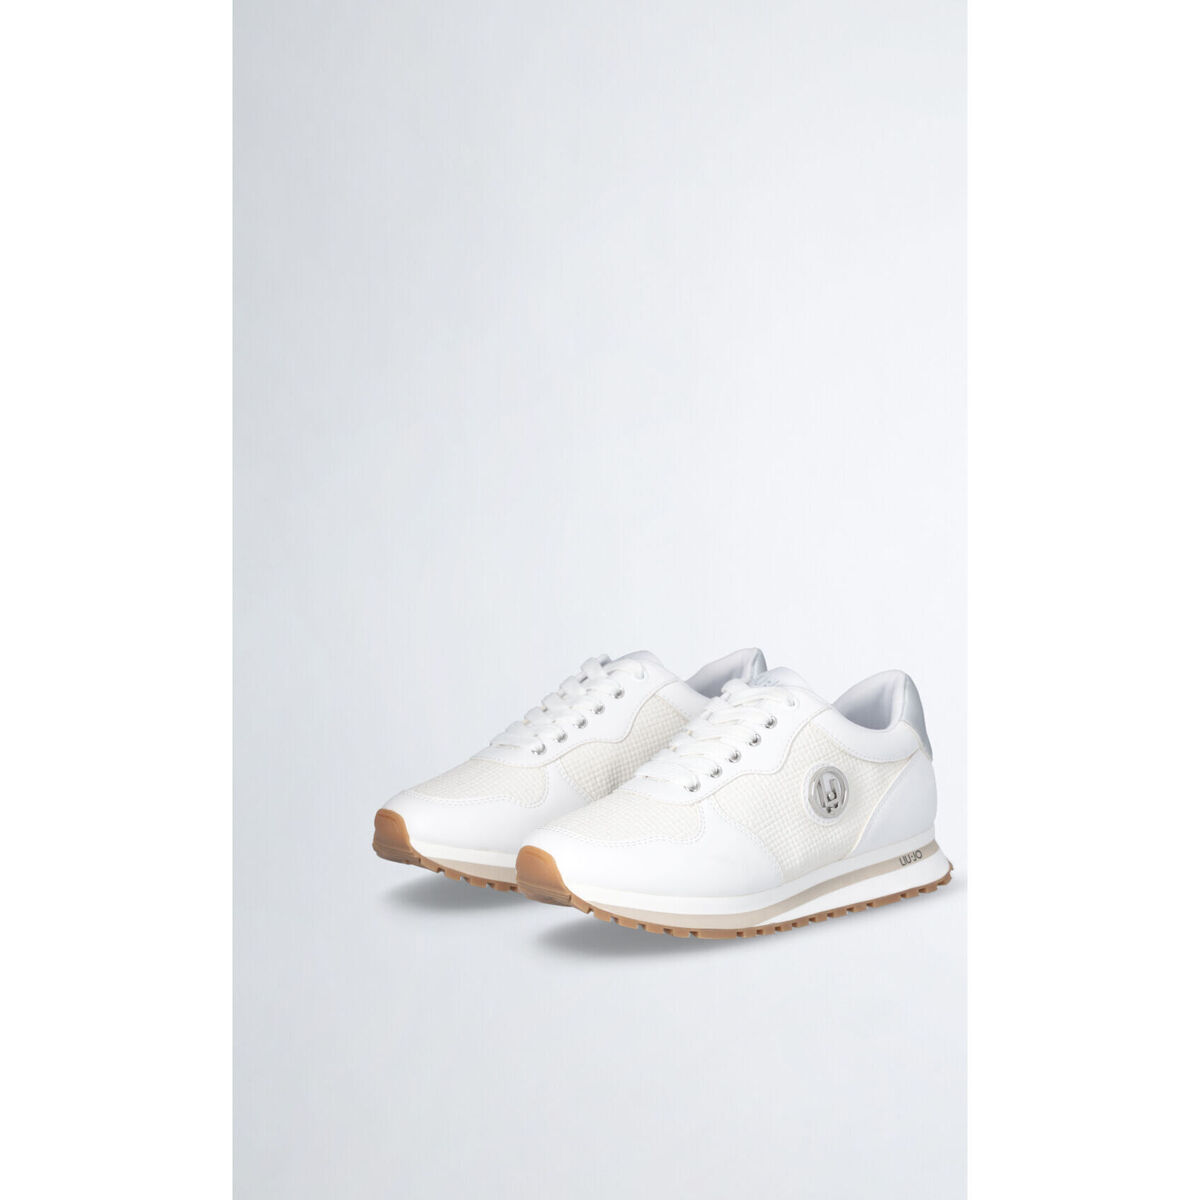 Liu Jo Blanc Sneakers total white BrMjCrod